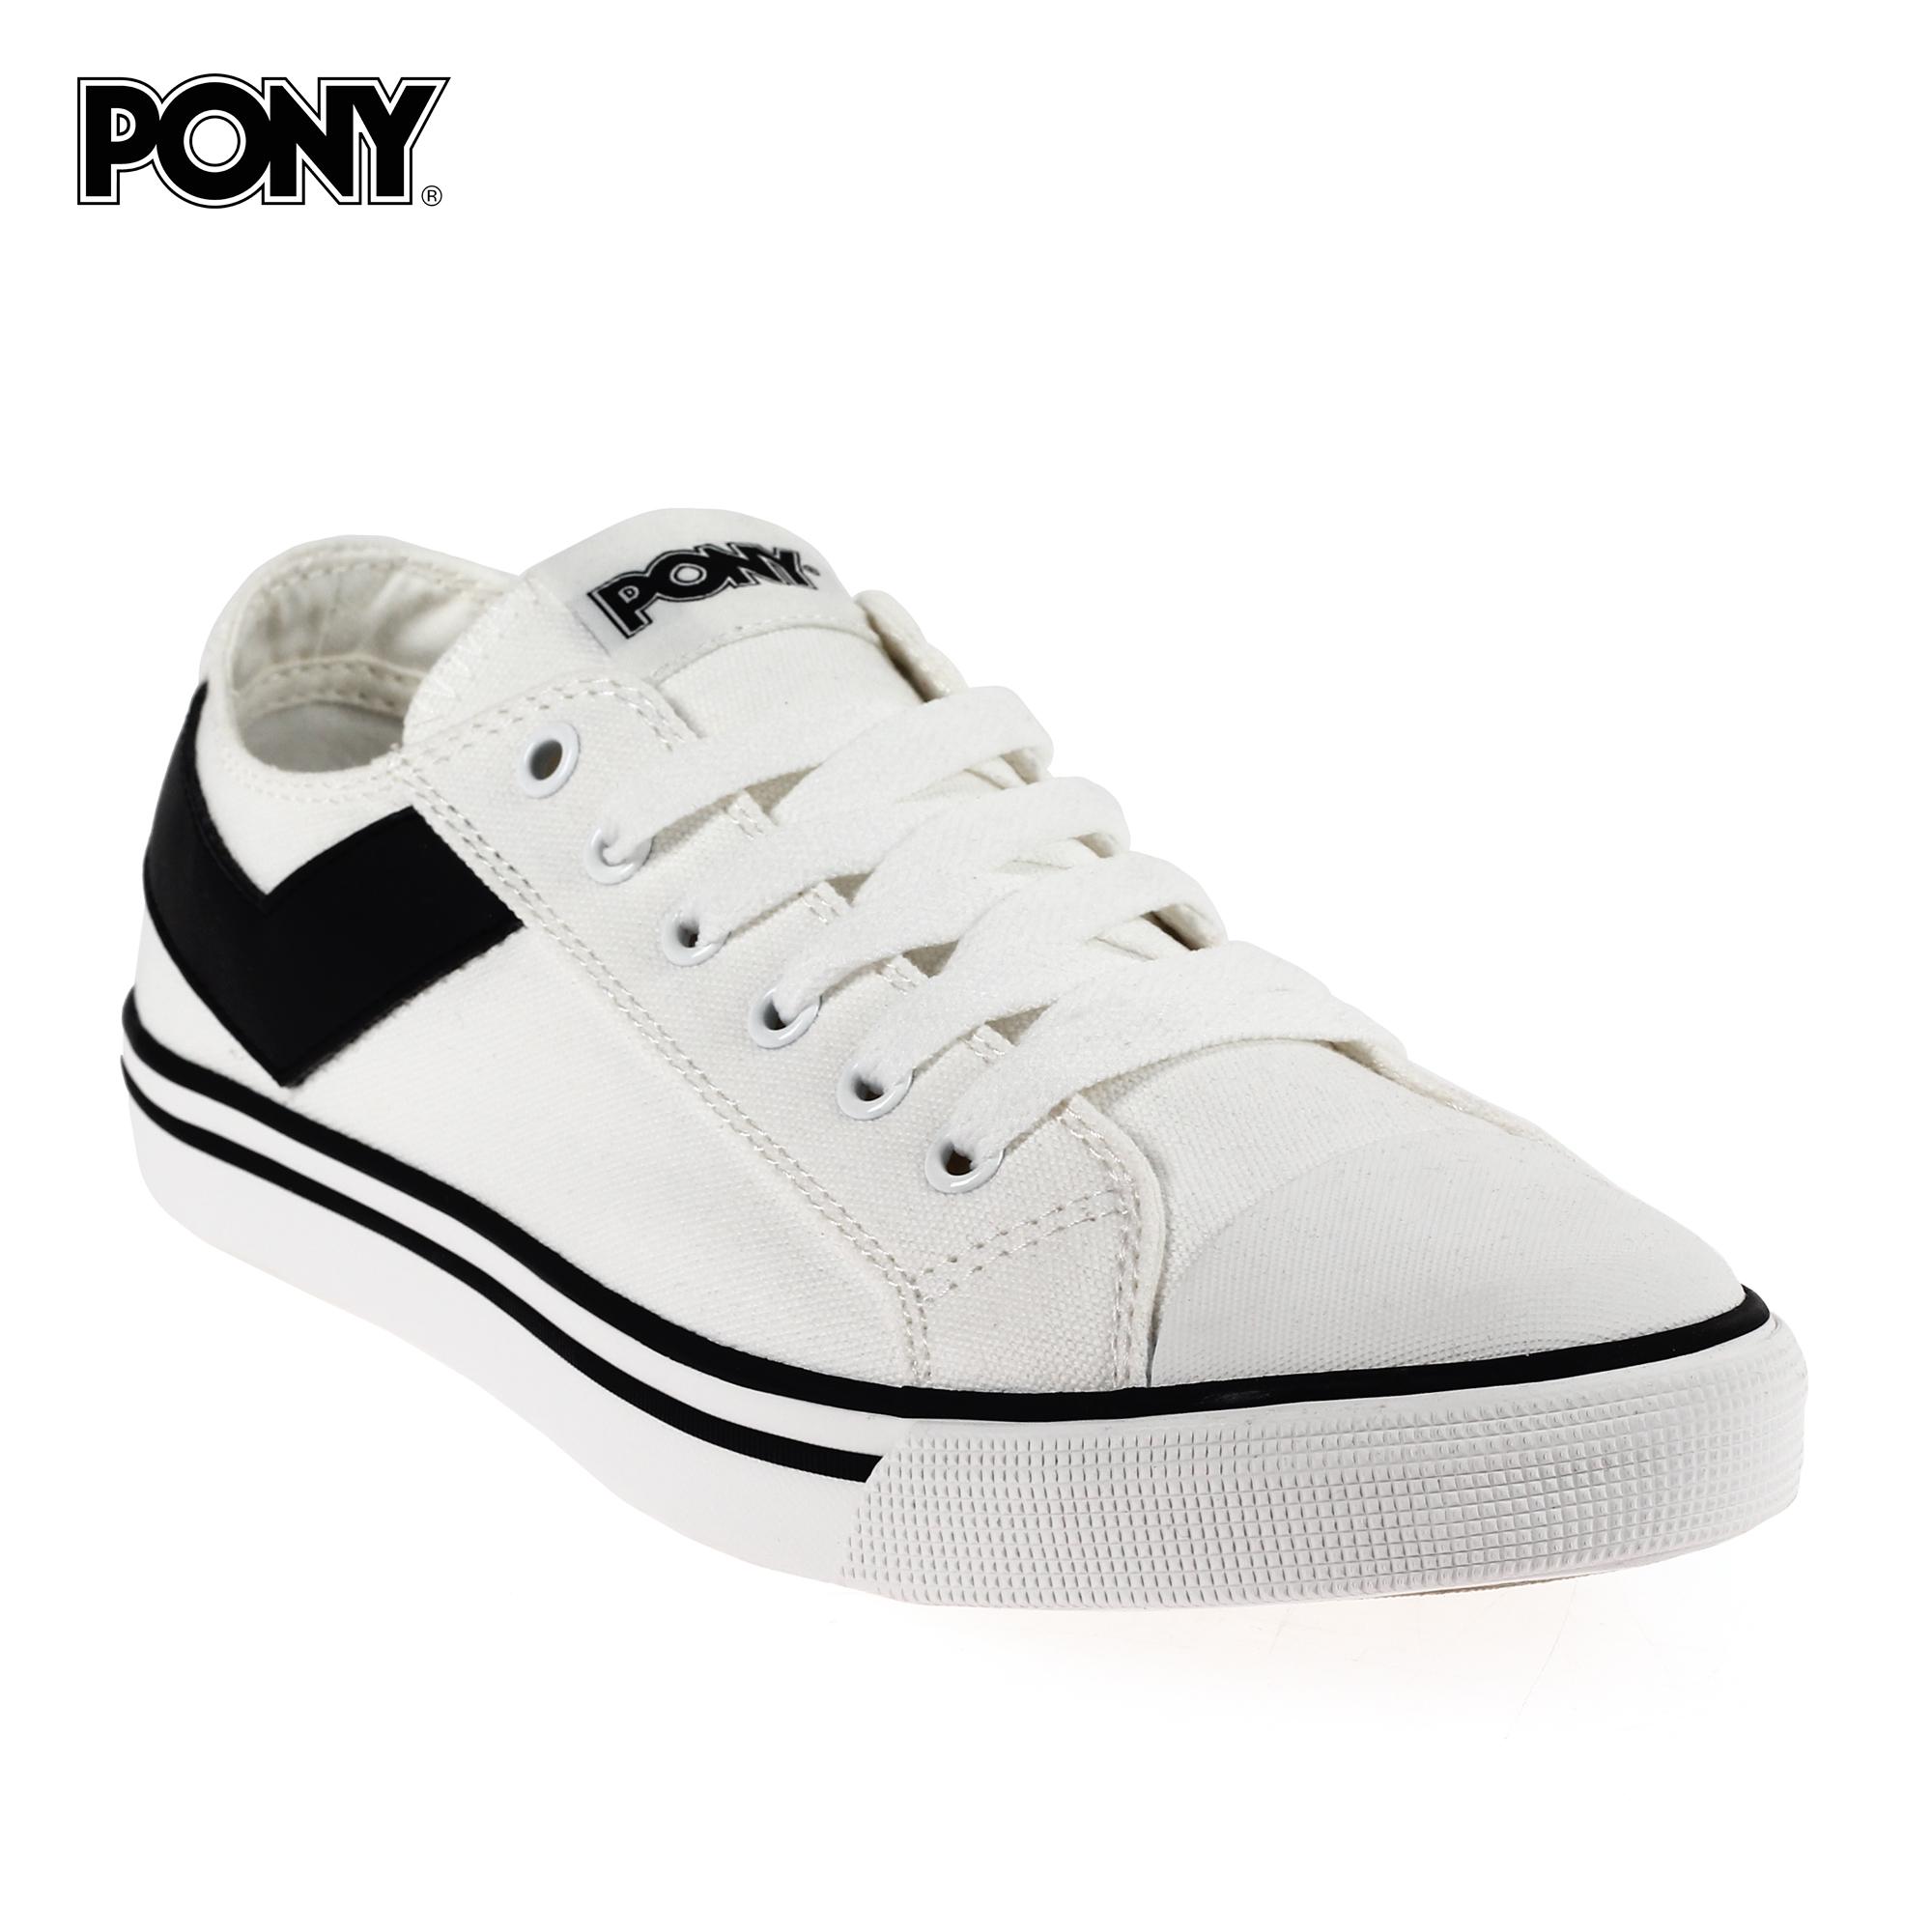 pony sneakers